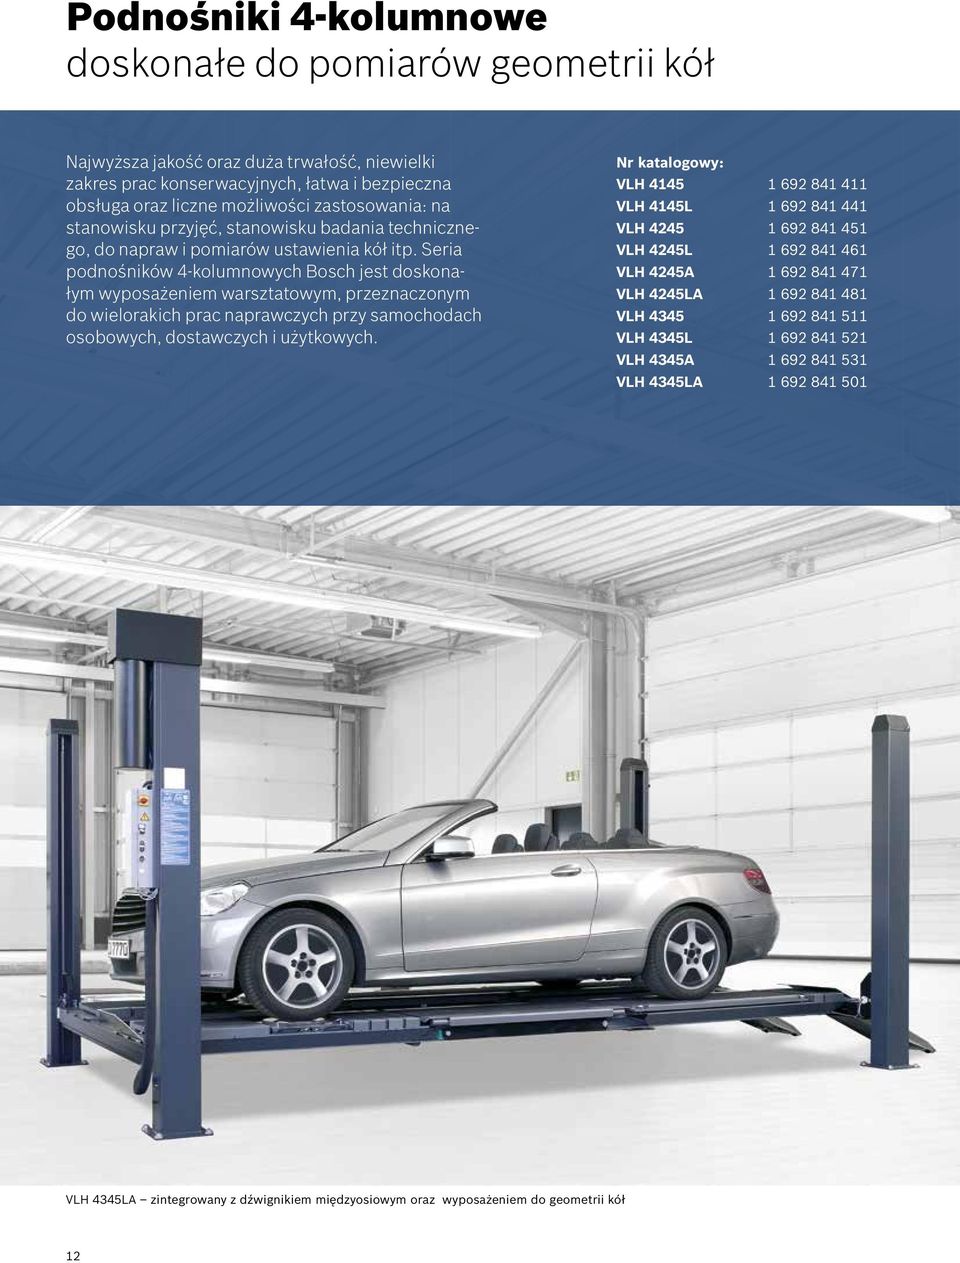 Seria podnośników 4-kolumnowych Bosch jest doskonałym wyposażeniem warsztatowym, przeznaczonym do wielorakich prac naprawczych przy samochodach osobowych, dostawczych i użytkowych.